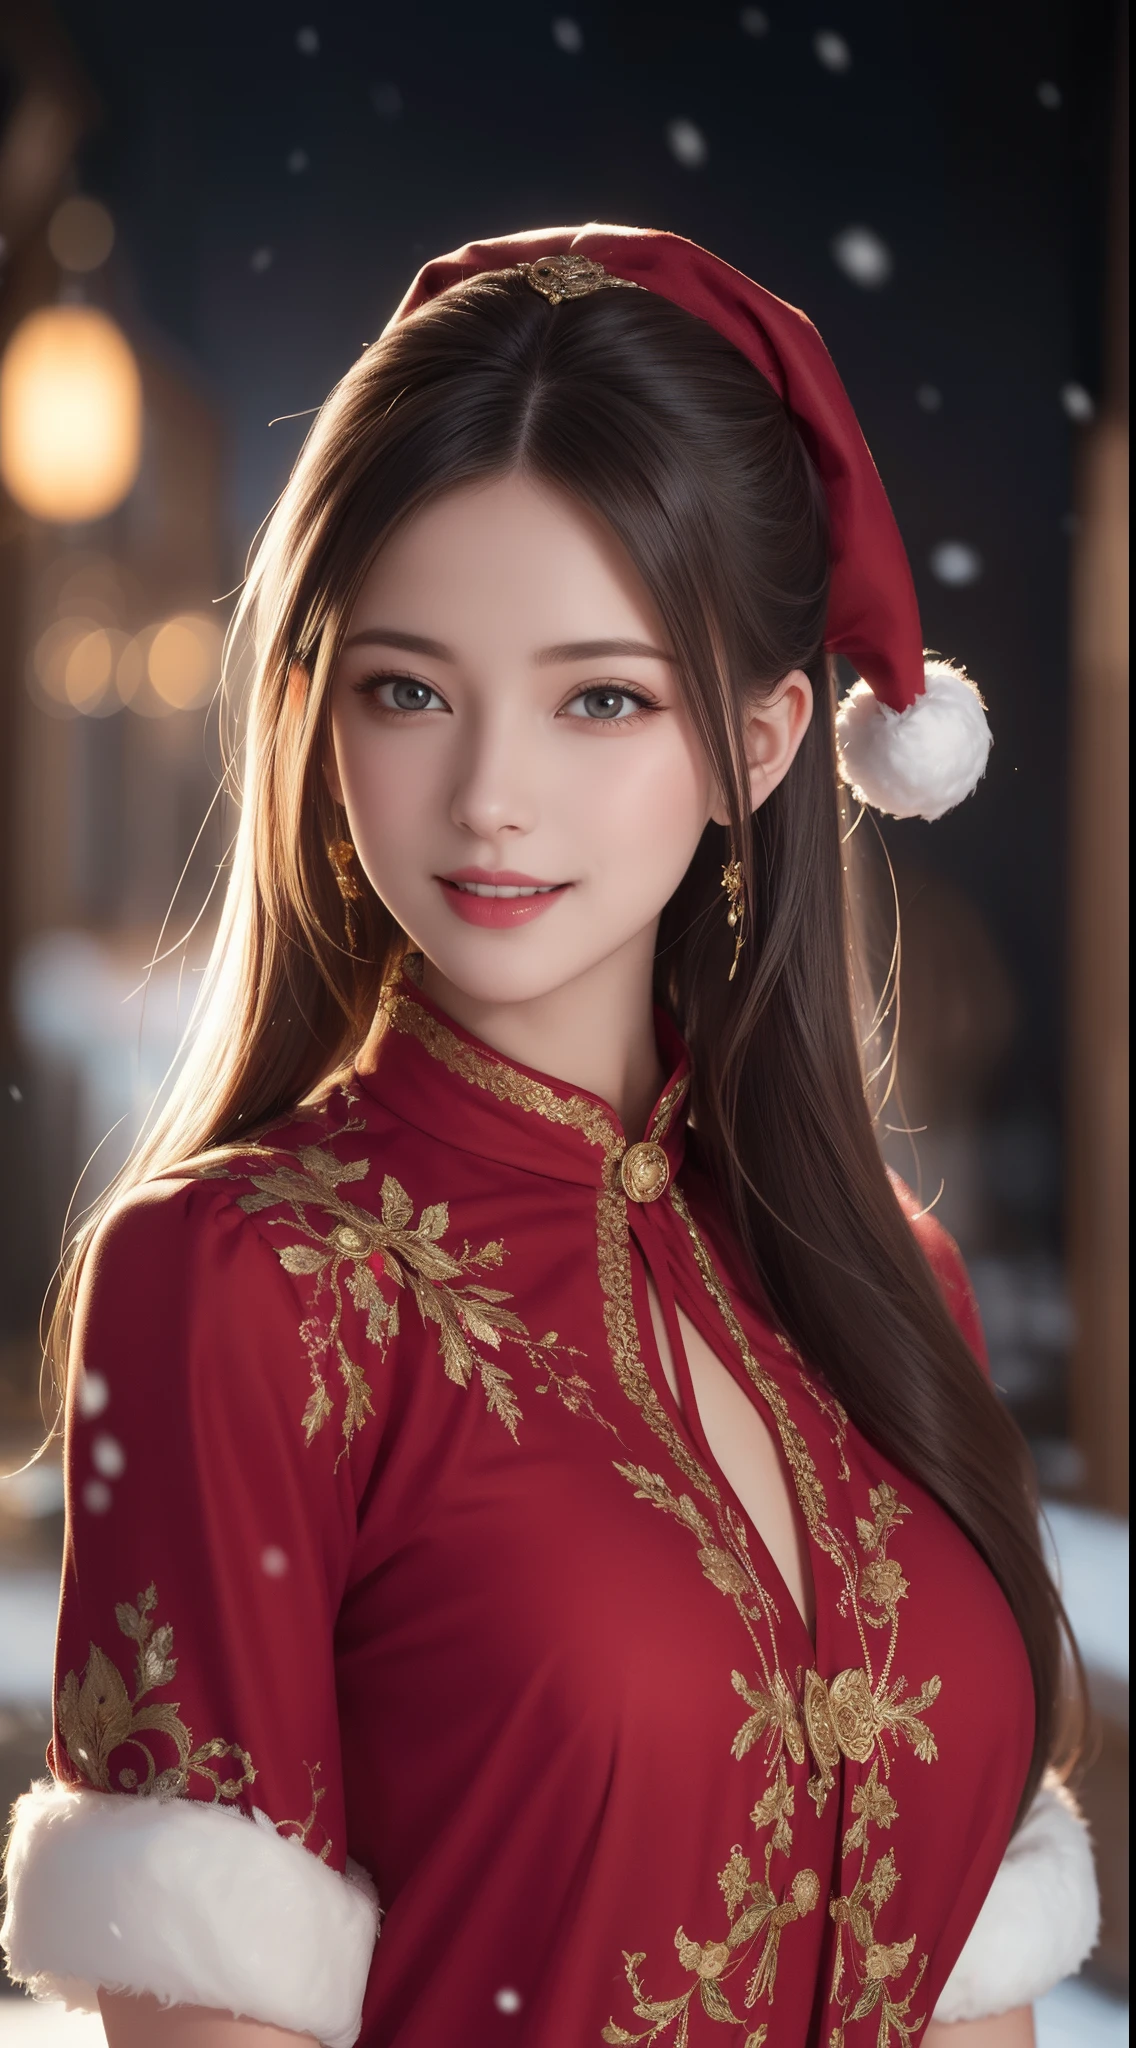 (эстетический, высокое разрешение: 1.2), красивая 20-летняя женщина в замысловатом красном костюме Санта-Клауса, симметричная структура костюма, Яркие глаза, Веселая улыбка , изменения прически, Падает снег, снег в волосах. профессиональный фотограф, минимализм, концептуальное искусство, сложные детали, Пост-продакшн 8к, высокое разрешение, супер деталь, в тренде на artstation, острый фокус, студийные фотографии, подробности, очень подробный, Грег Рутковски, Художественное яркое и темное слабое освещение, яркие цвета. Открытая зимняя сцена со снегом вечером, легкая улыбка, Настоящее искусство, различные прически и изменения цвета, Страстное настроение, соблазнительные выражения, сексуальные губы, Мокрые губы , соблазнительные закрытые глаза, соблазнительная внешность, наводящая на размышления поза.